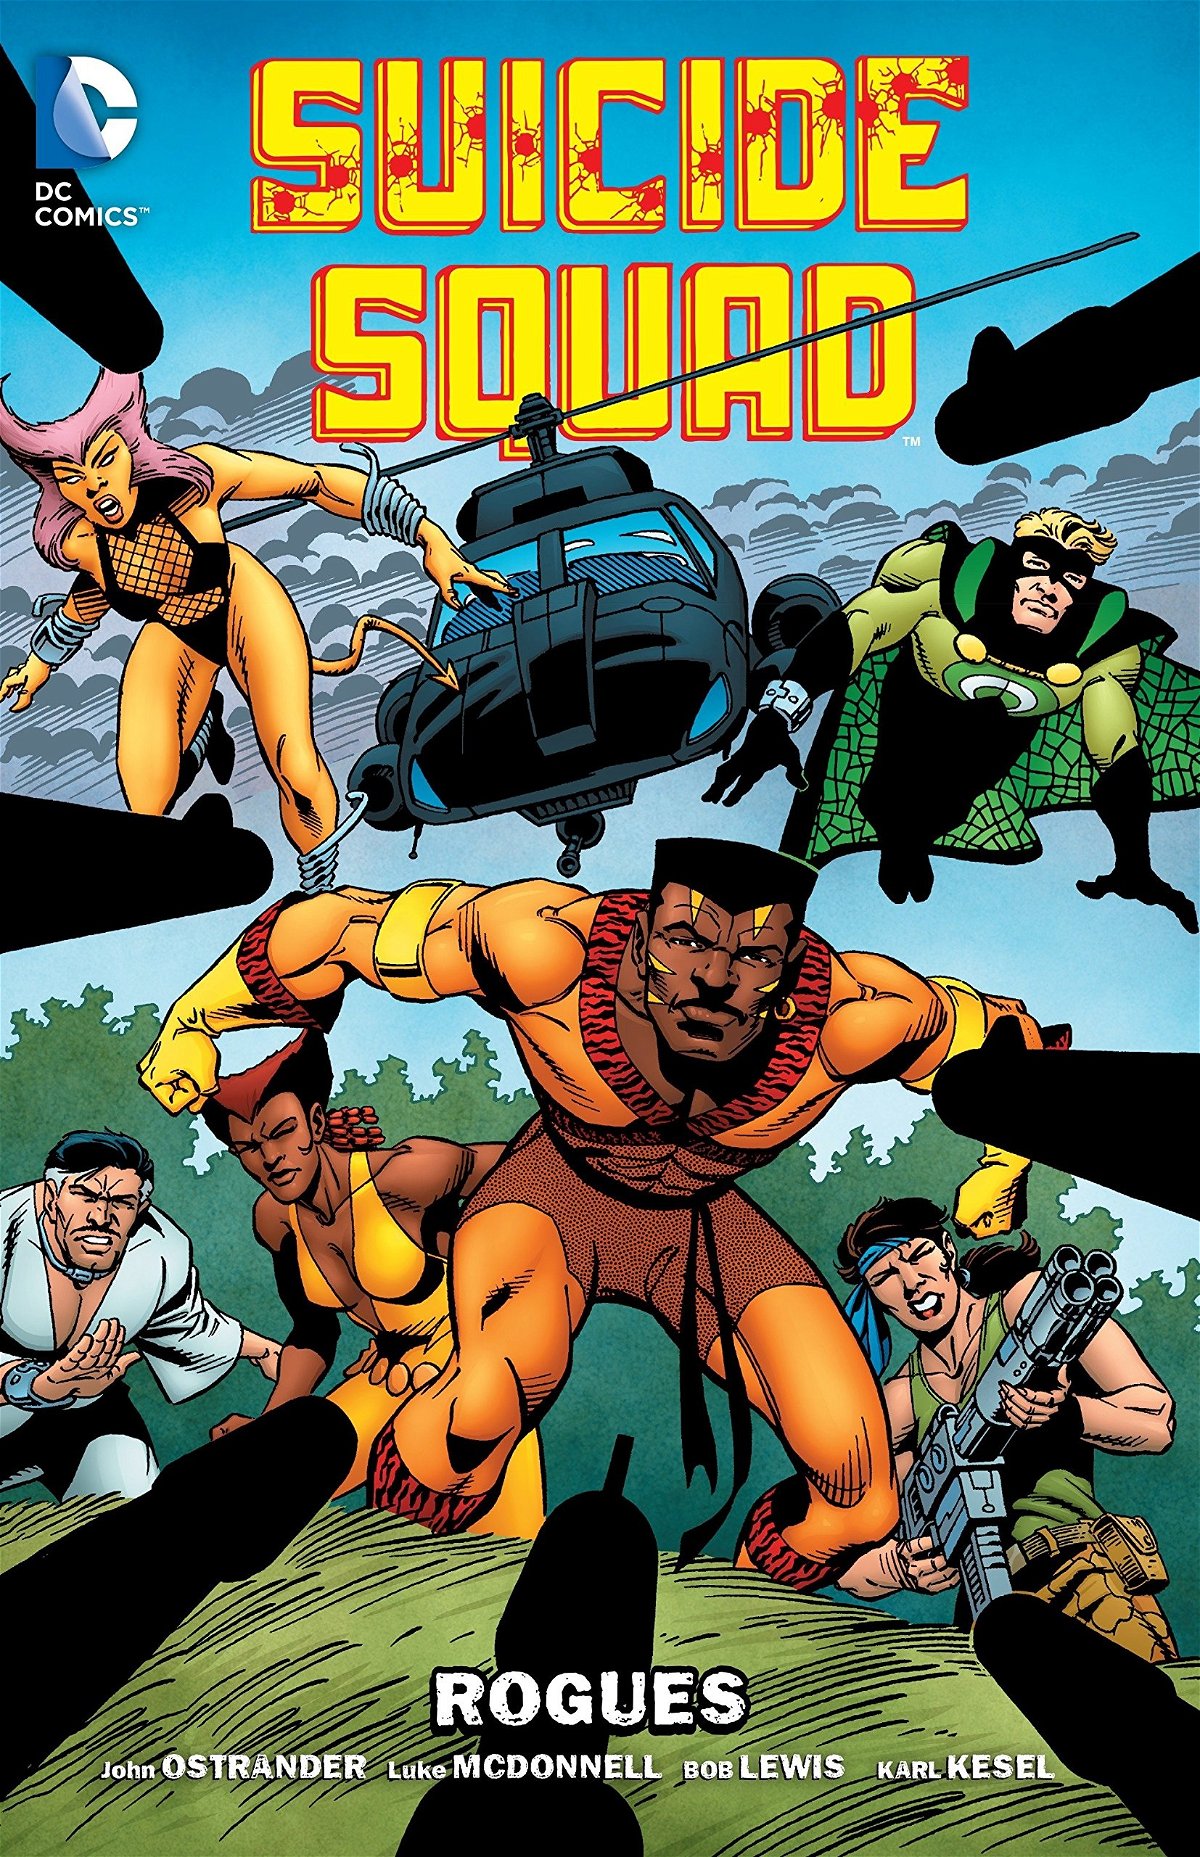 Il terzo volume USA della Suicide Squad di John Ostrander